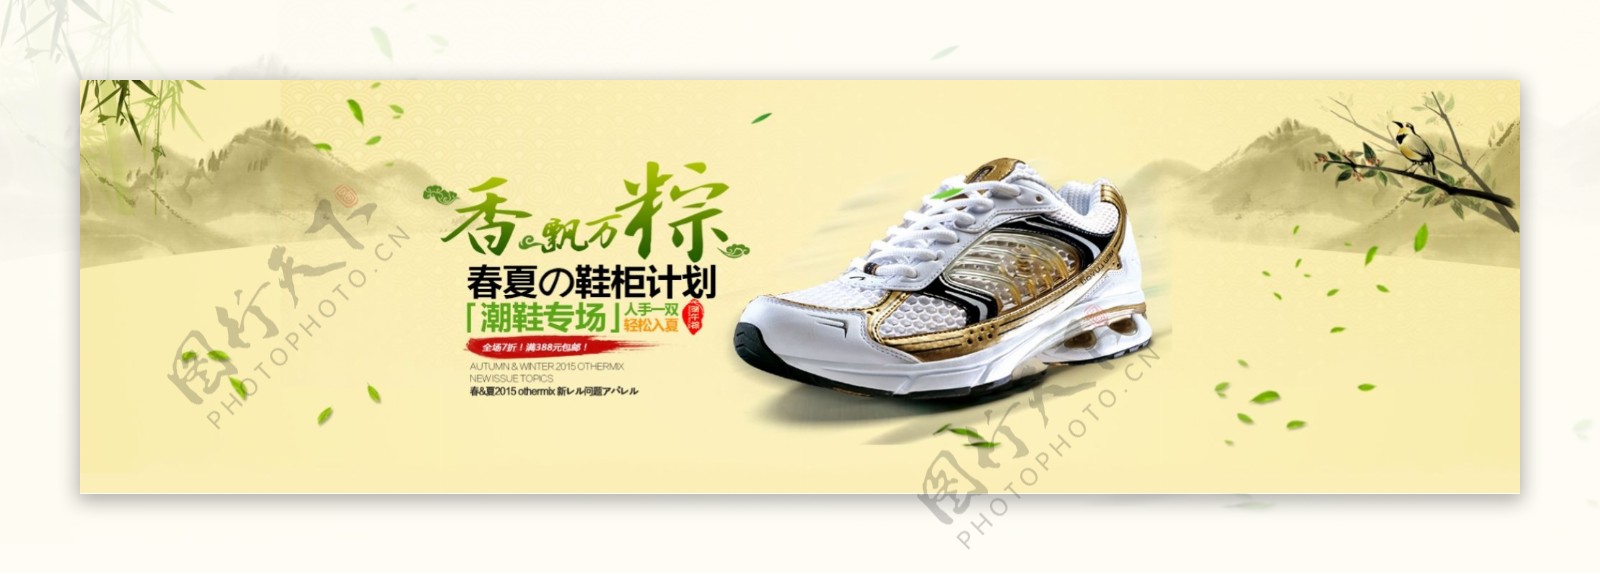 淘宝运动鞋端午促销海报设计PSD素材